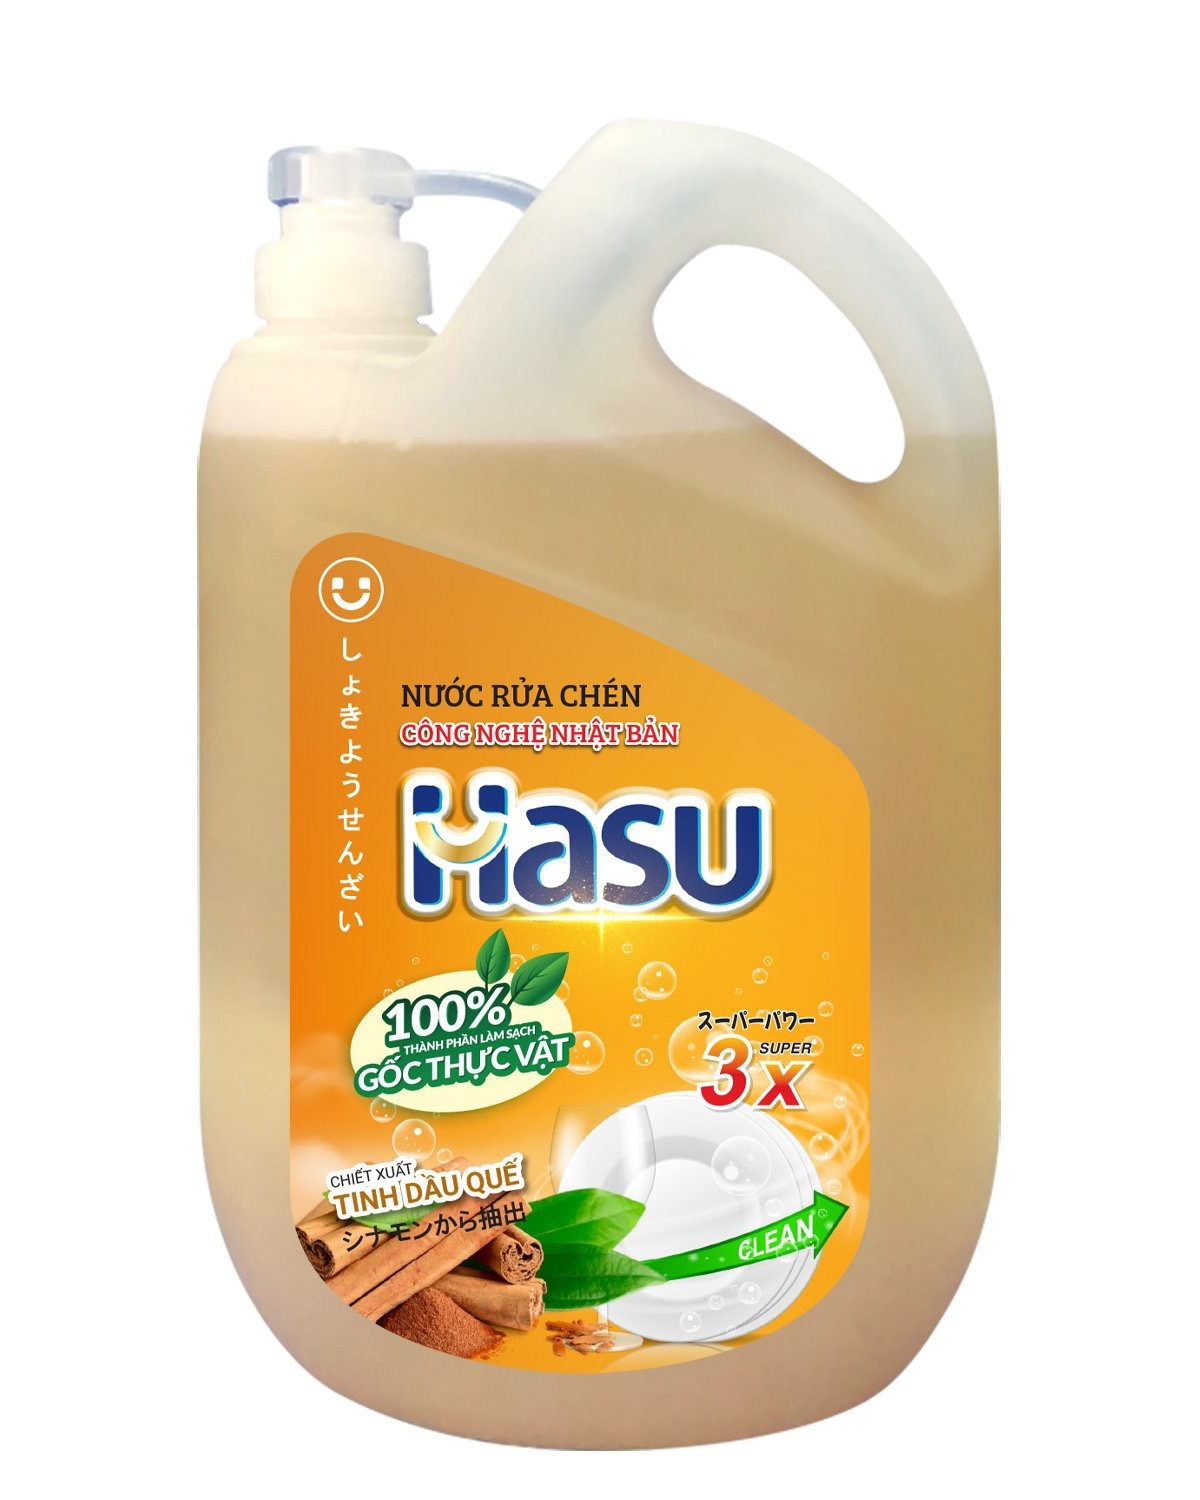 Nước rửa chén Hasu công nghệ Nhật Bản tinh dầu quế can 2,1kg